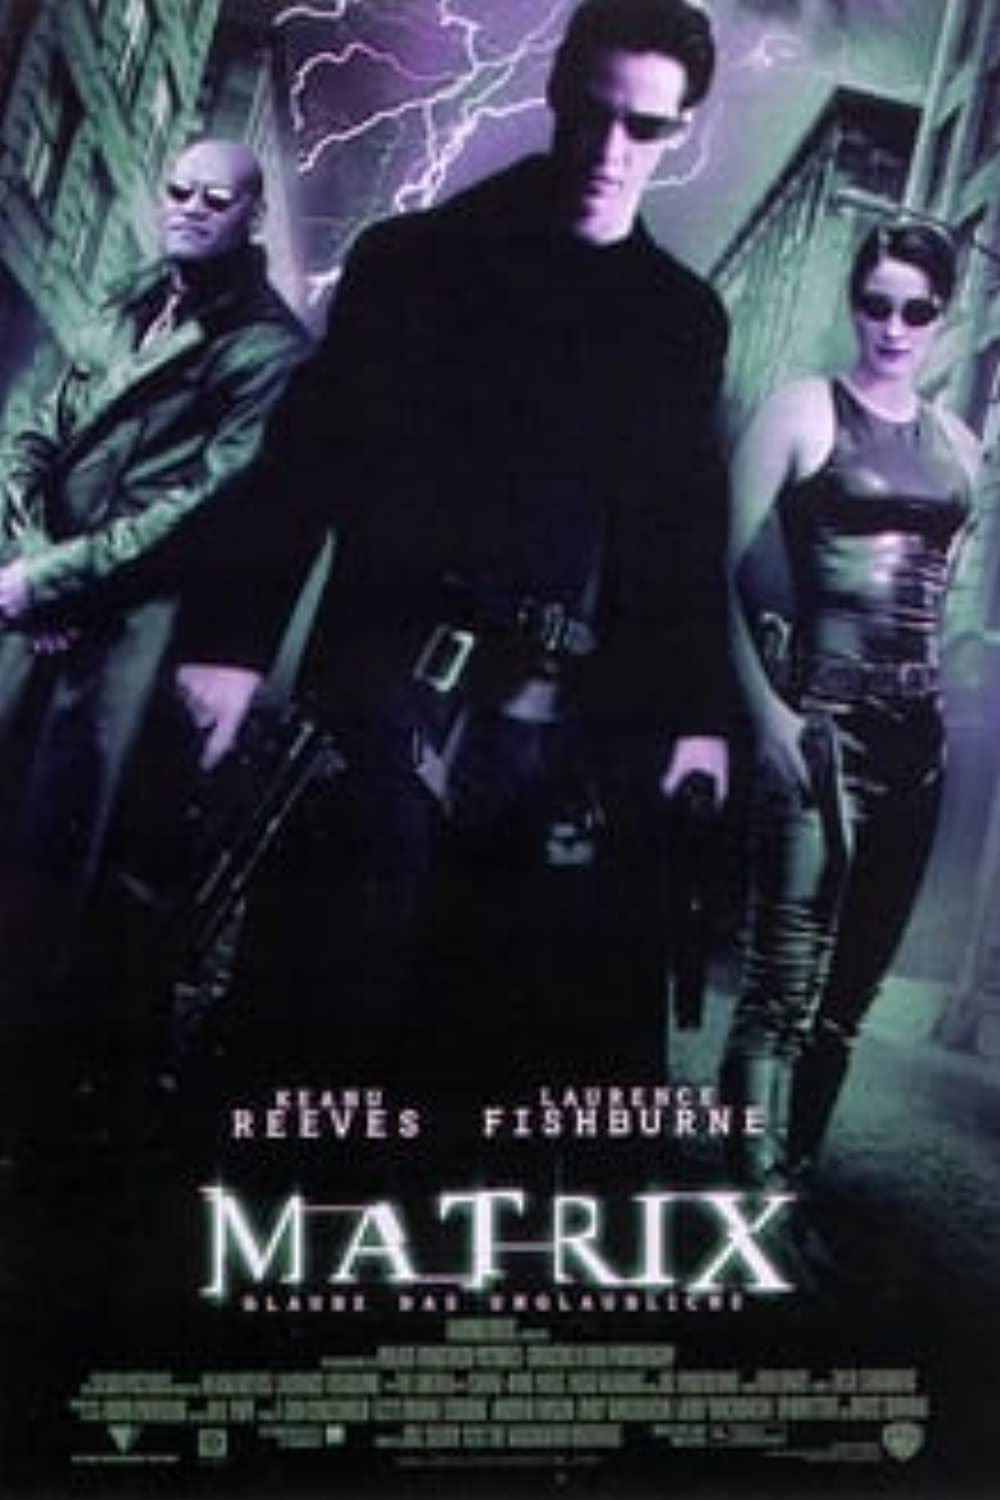 Filmbeschreibung zu Matrix (OV)